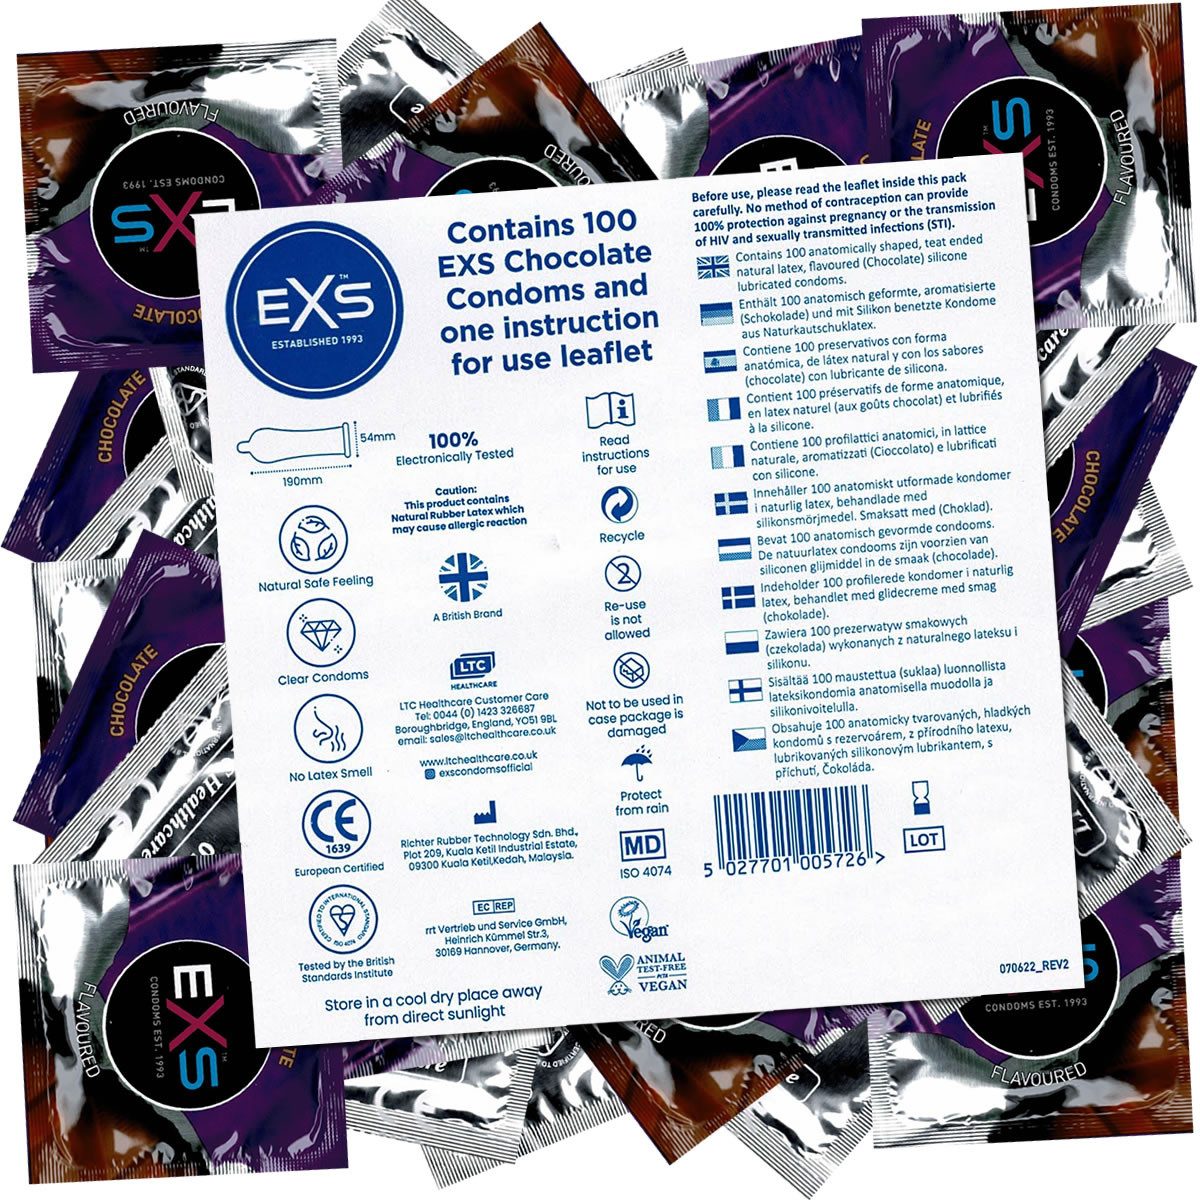 EXS Kondome Chocolate Flavour - leckere Kondome Packung mit, 100 St., aromatisierte Kondome, Kondome mit Schokoladen-Geschmack, Kondomvorrat, Großpackung